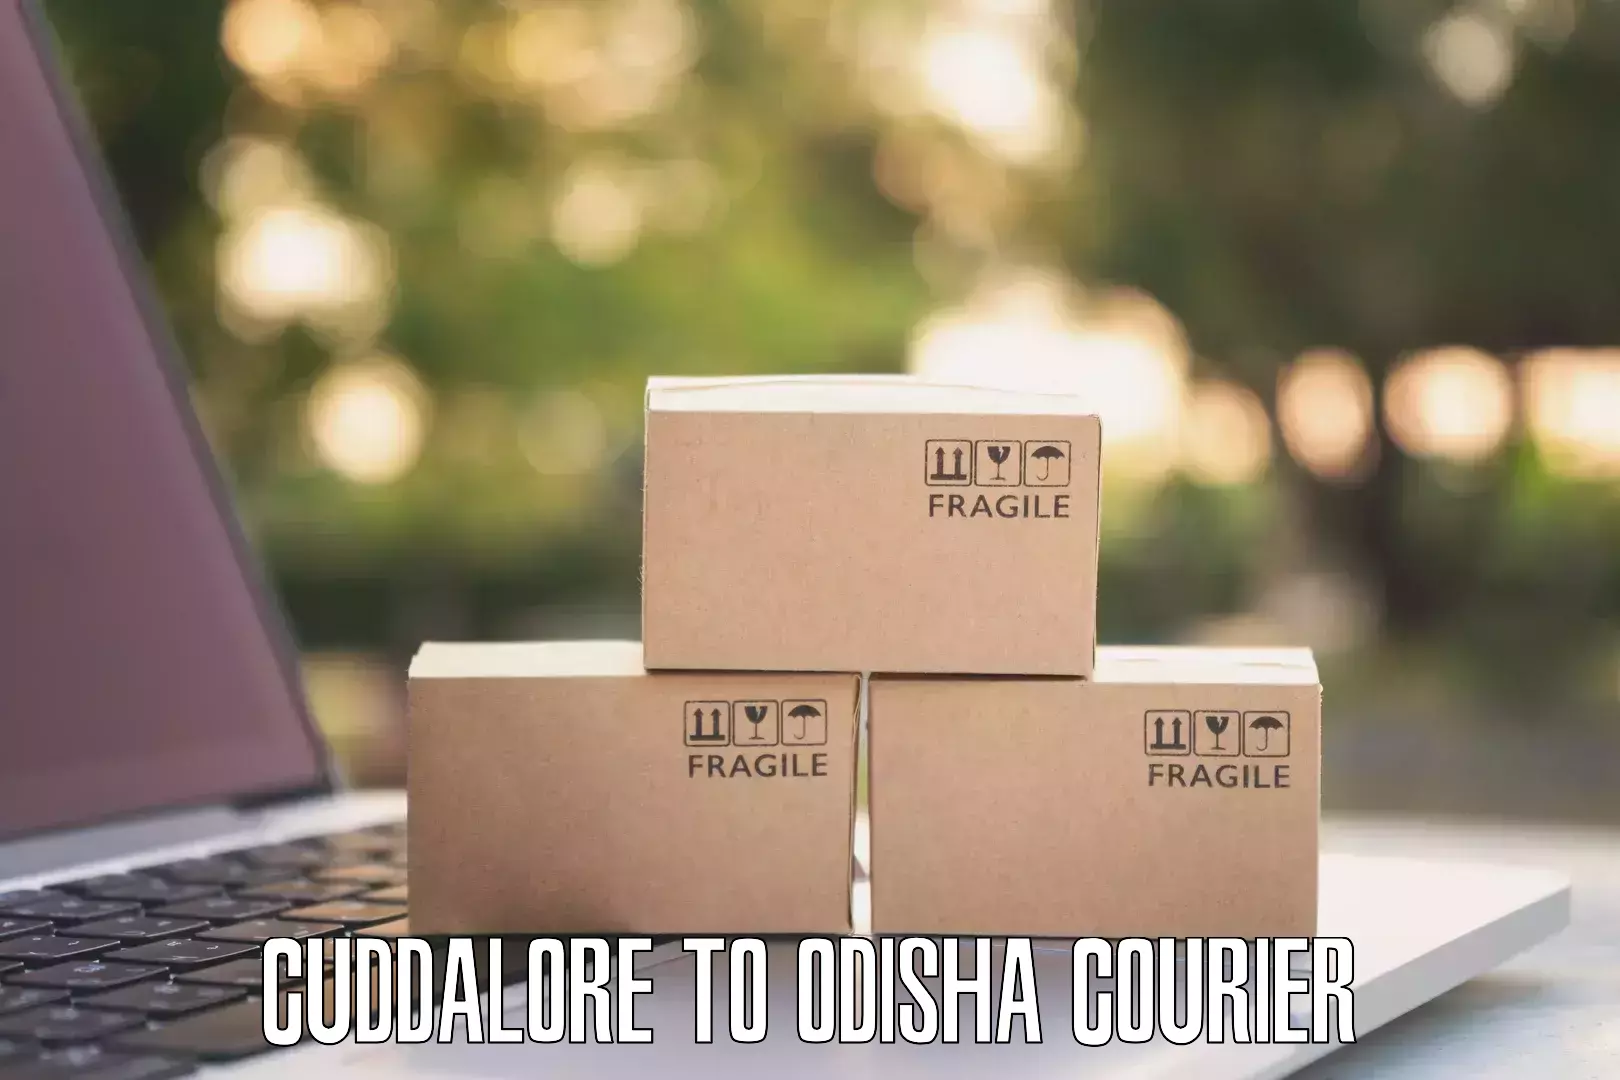 Digital courier platforms Cuddalore to Bhubaneswar